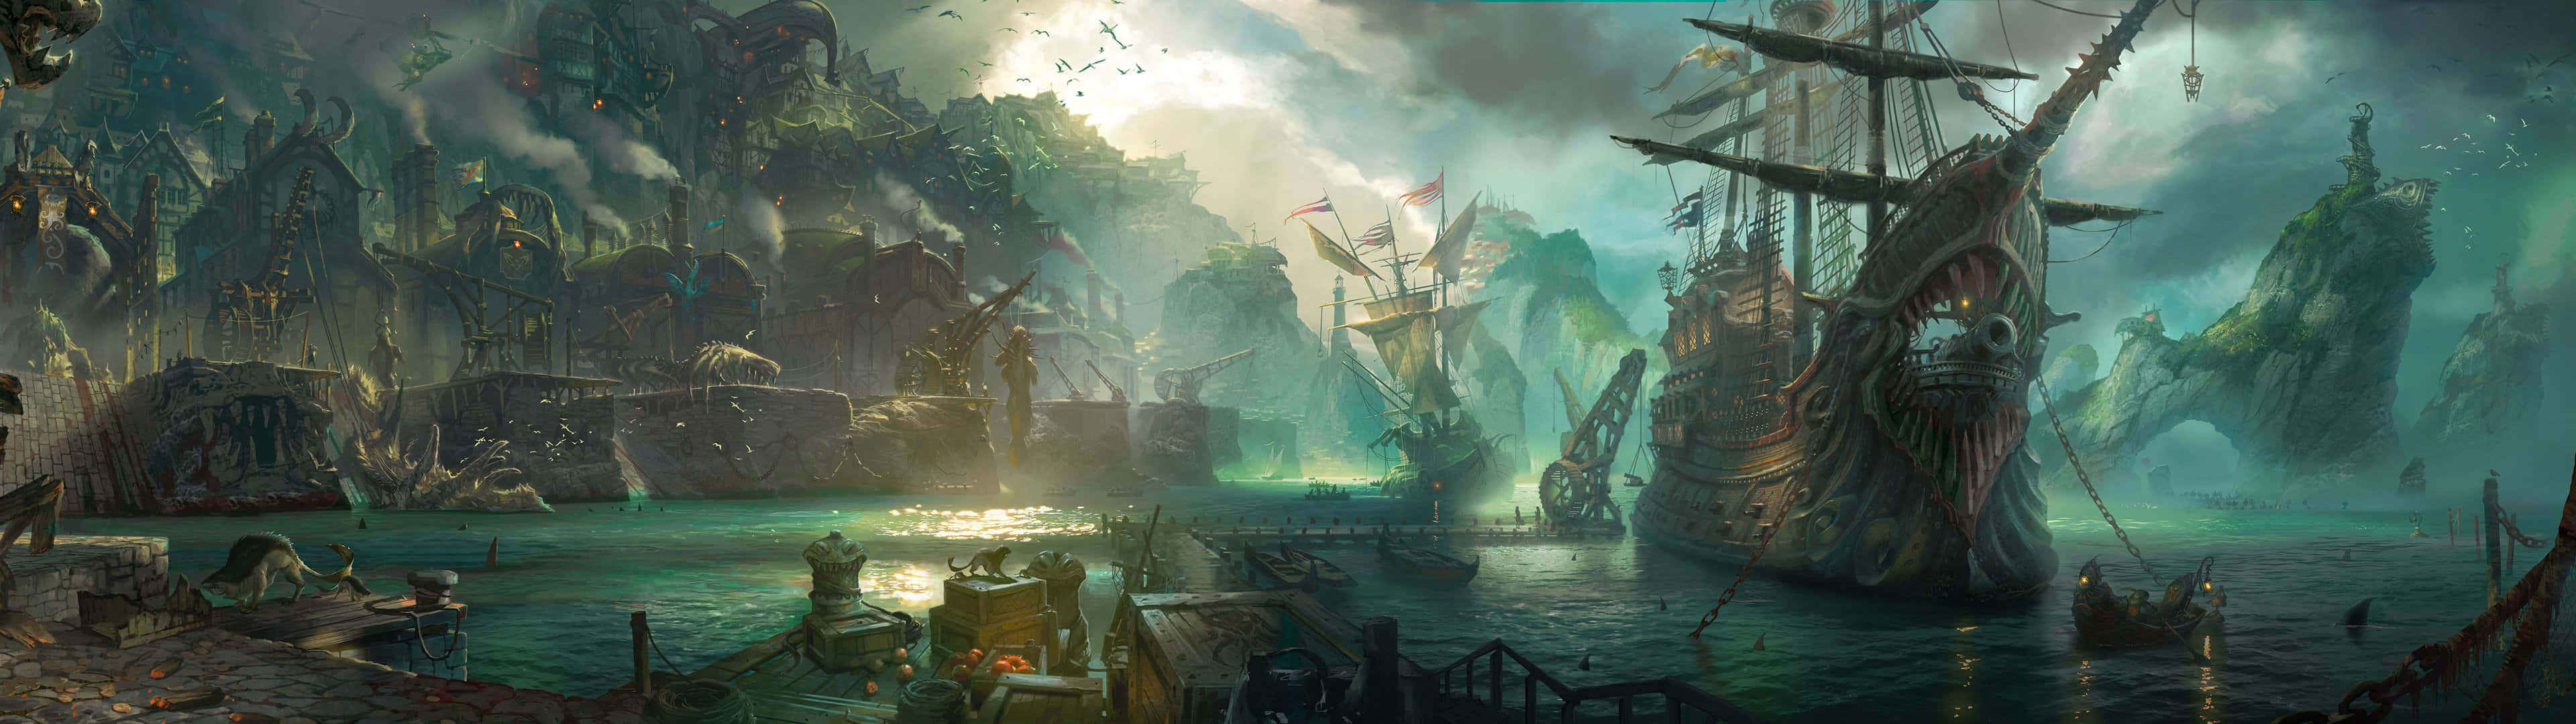 Tag din League Of Legends gaming-oplevelse til det næste niveau med dual screen gaming! Wallpaper